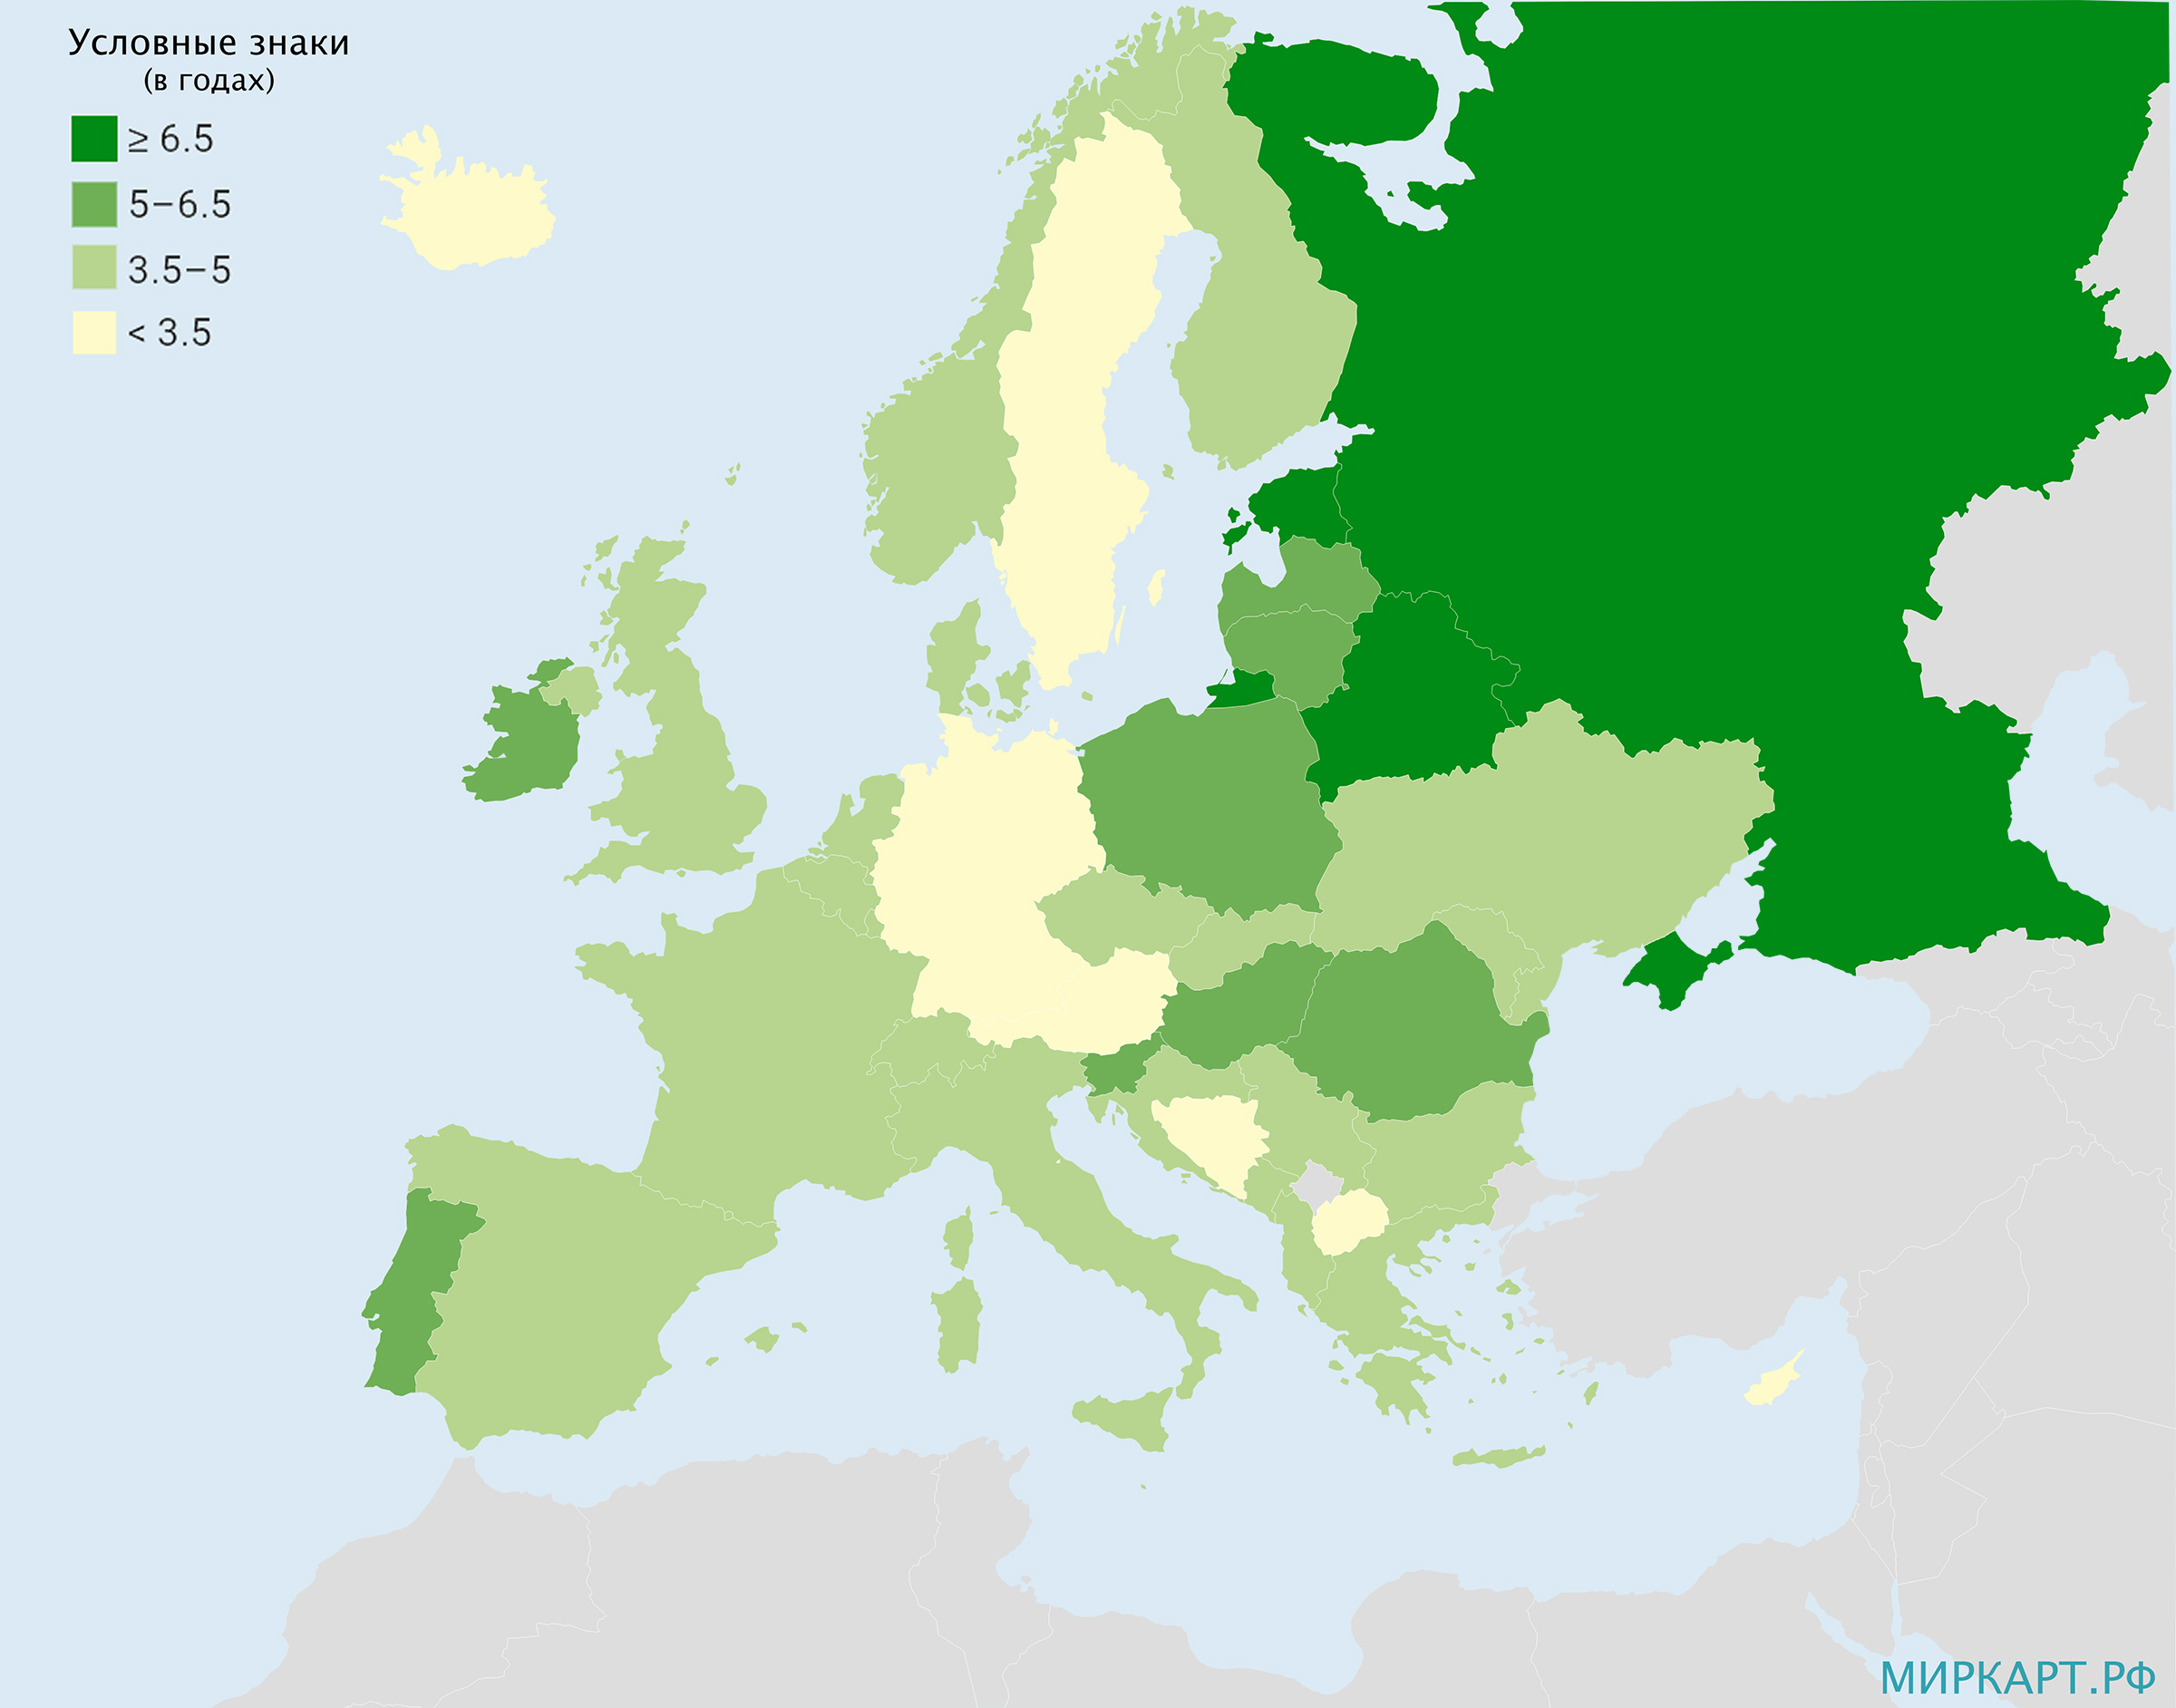 Рост продолжительности жизни в странах Европы в период 2000-2019 гг.